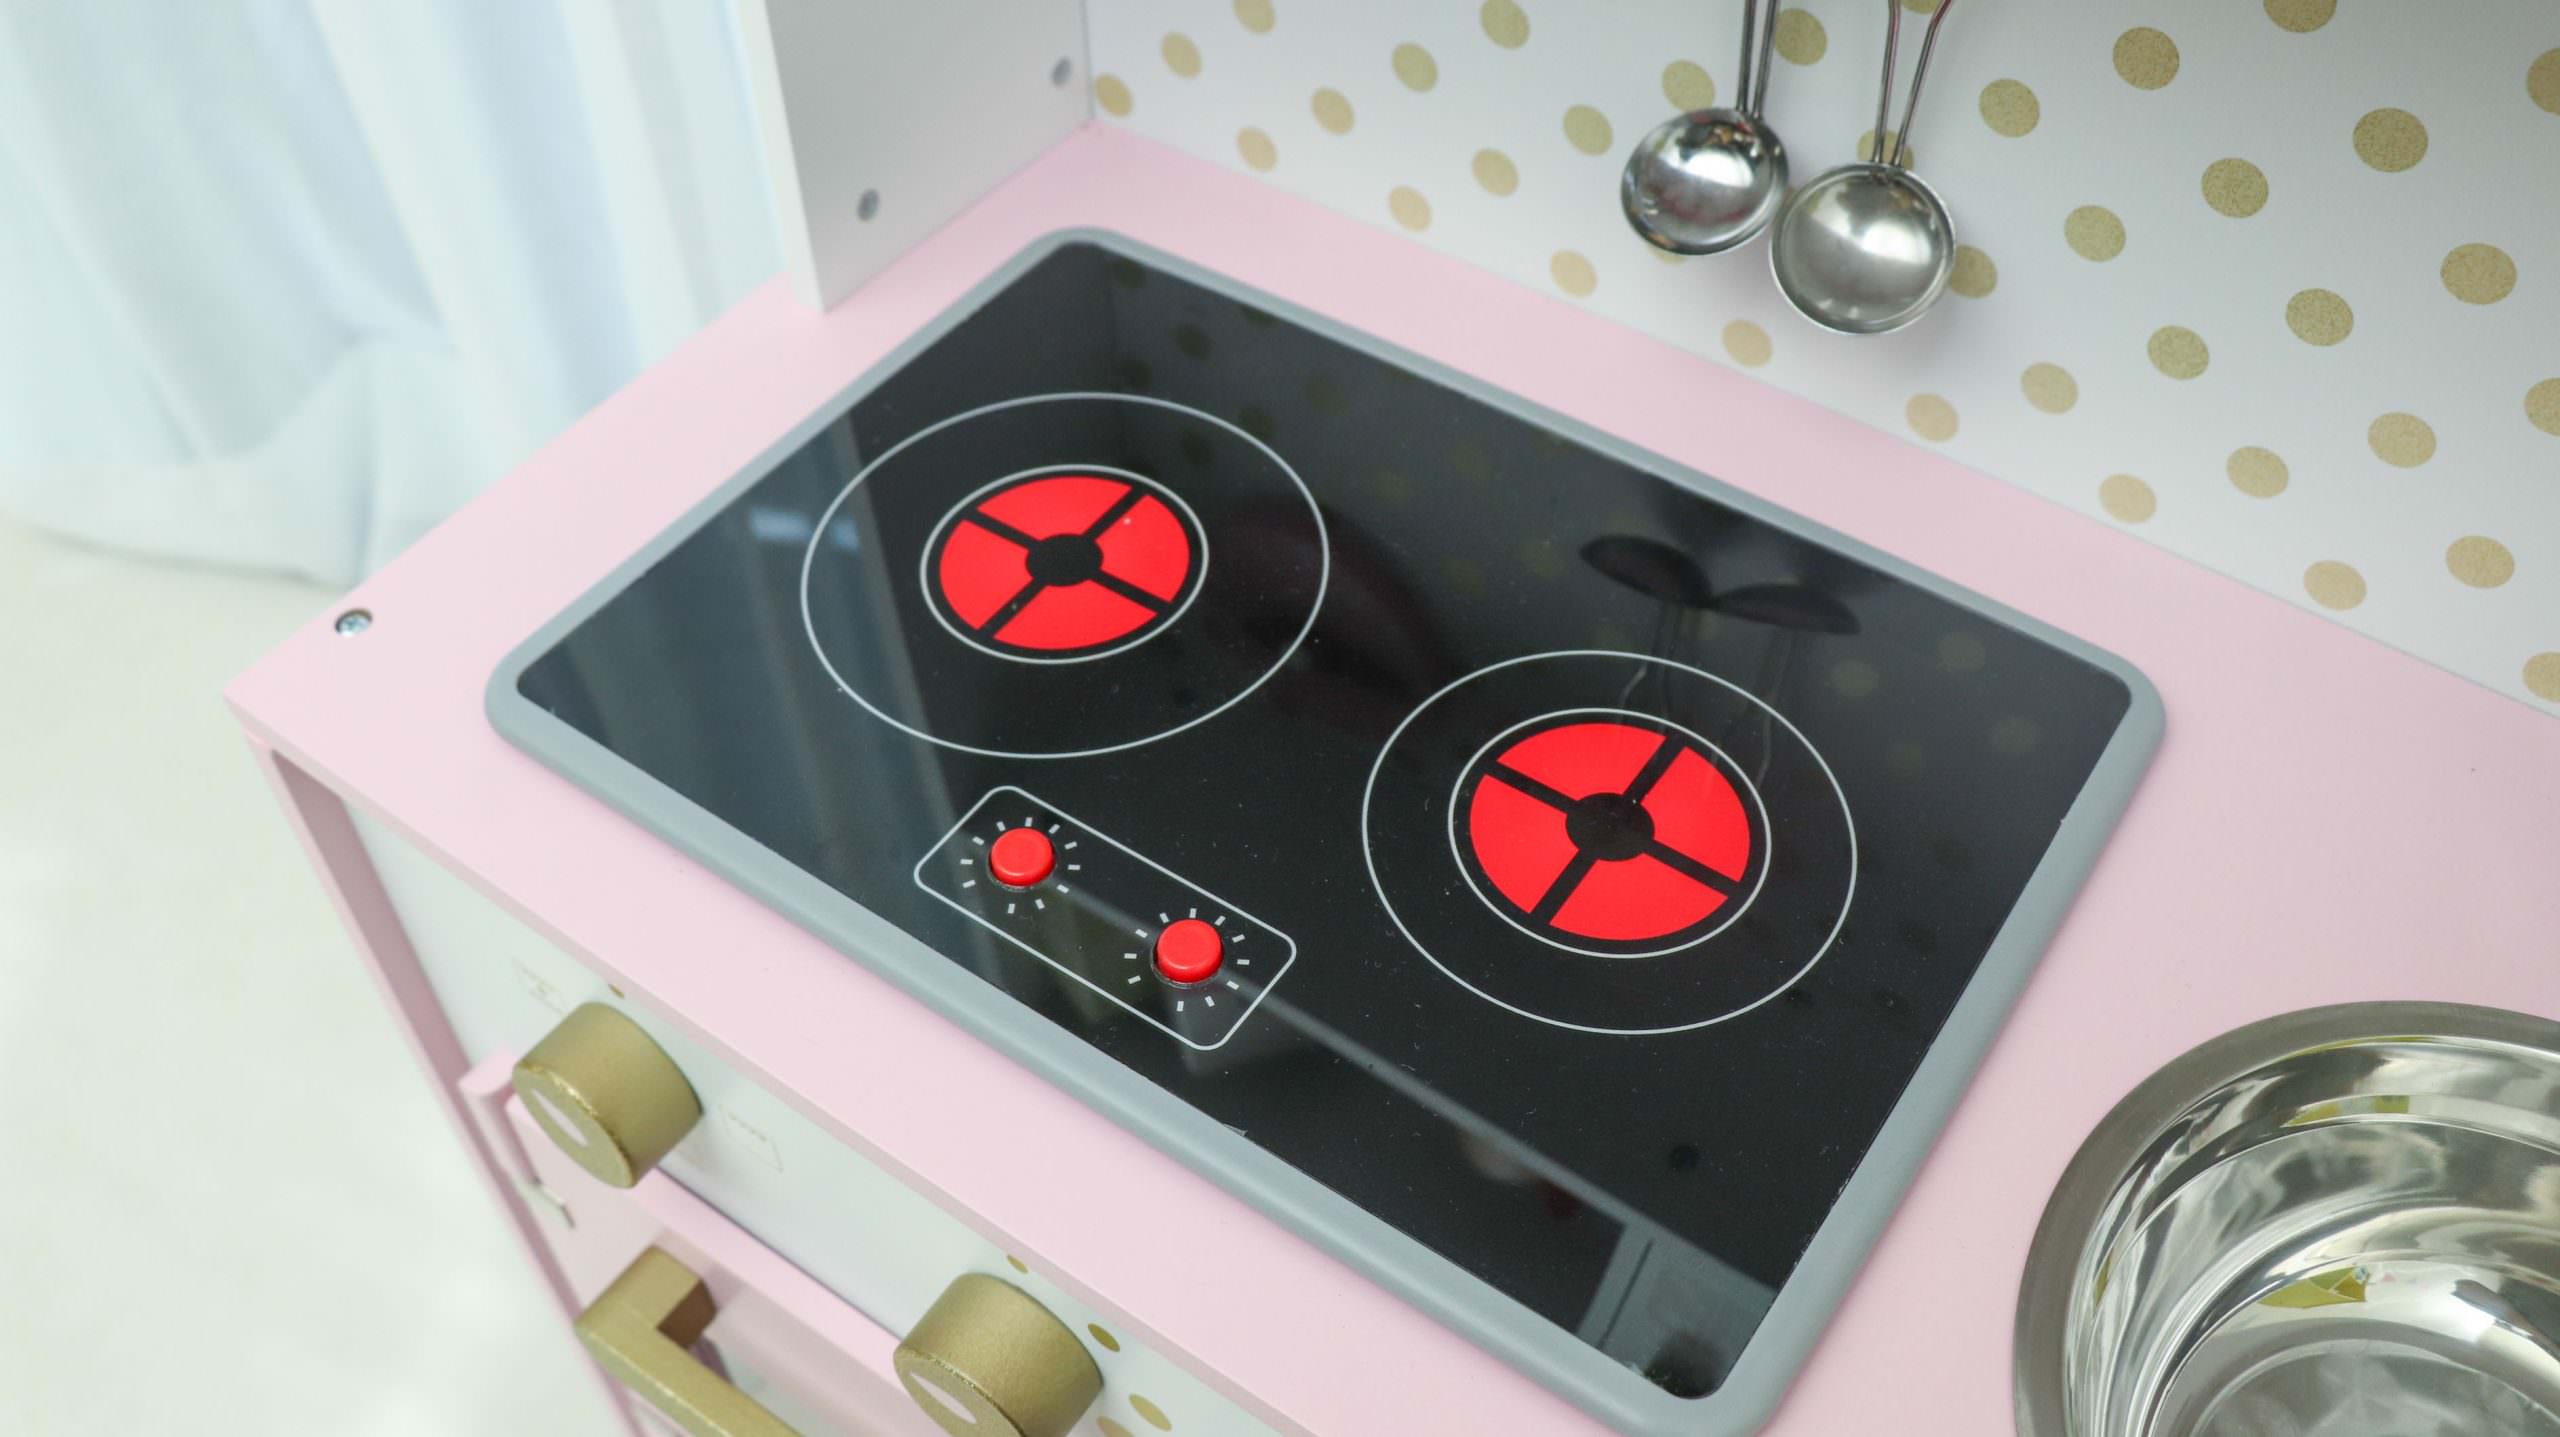 【法國Janod+日本ED Inter最美廚房玩具系列 | 從0歲玩到12歲百玩不膩好玩具】